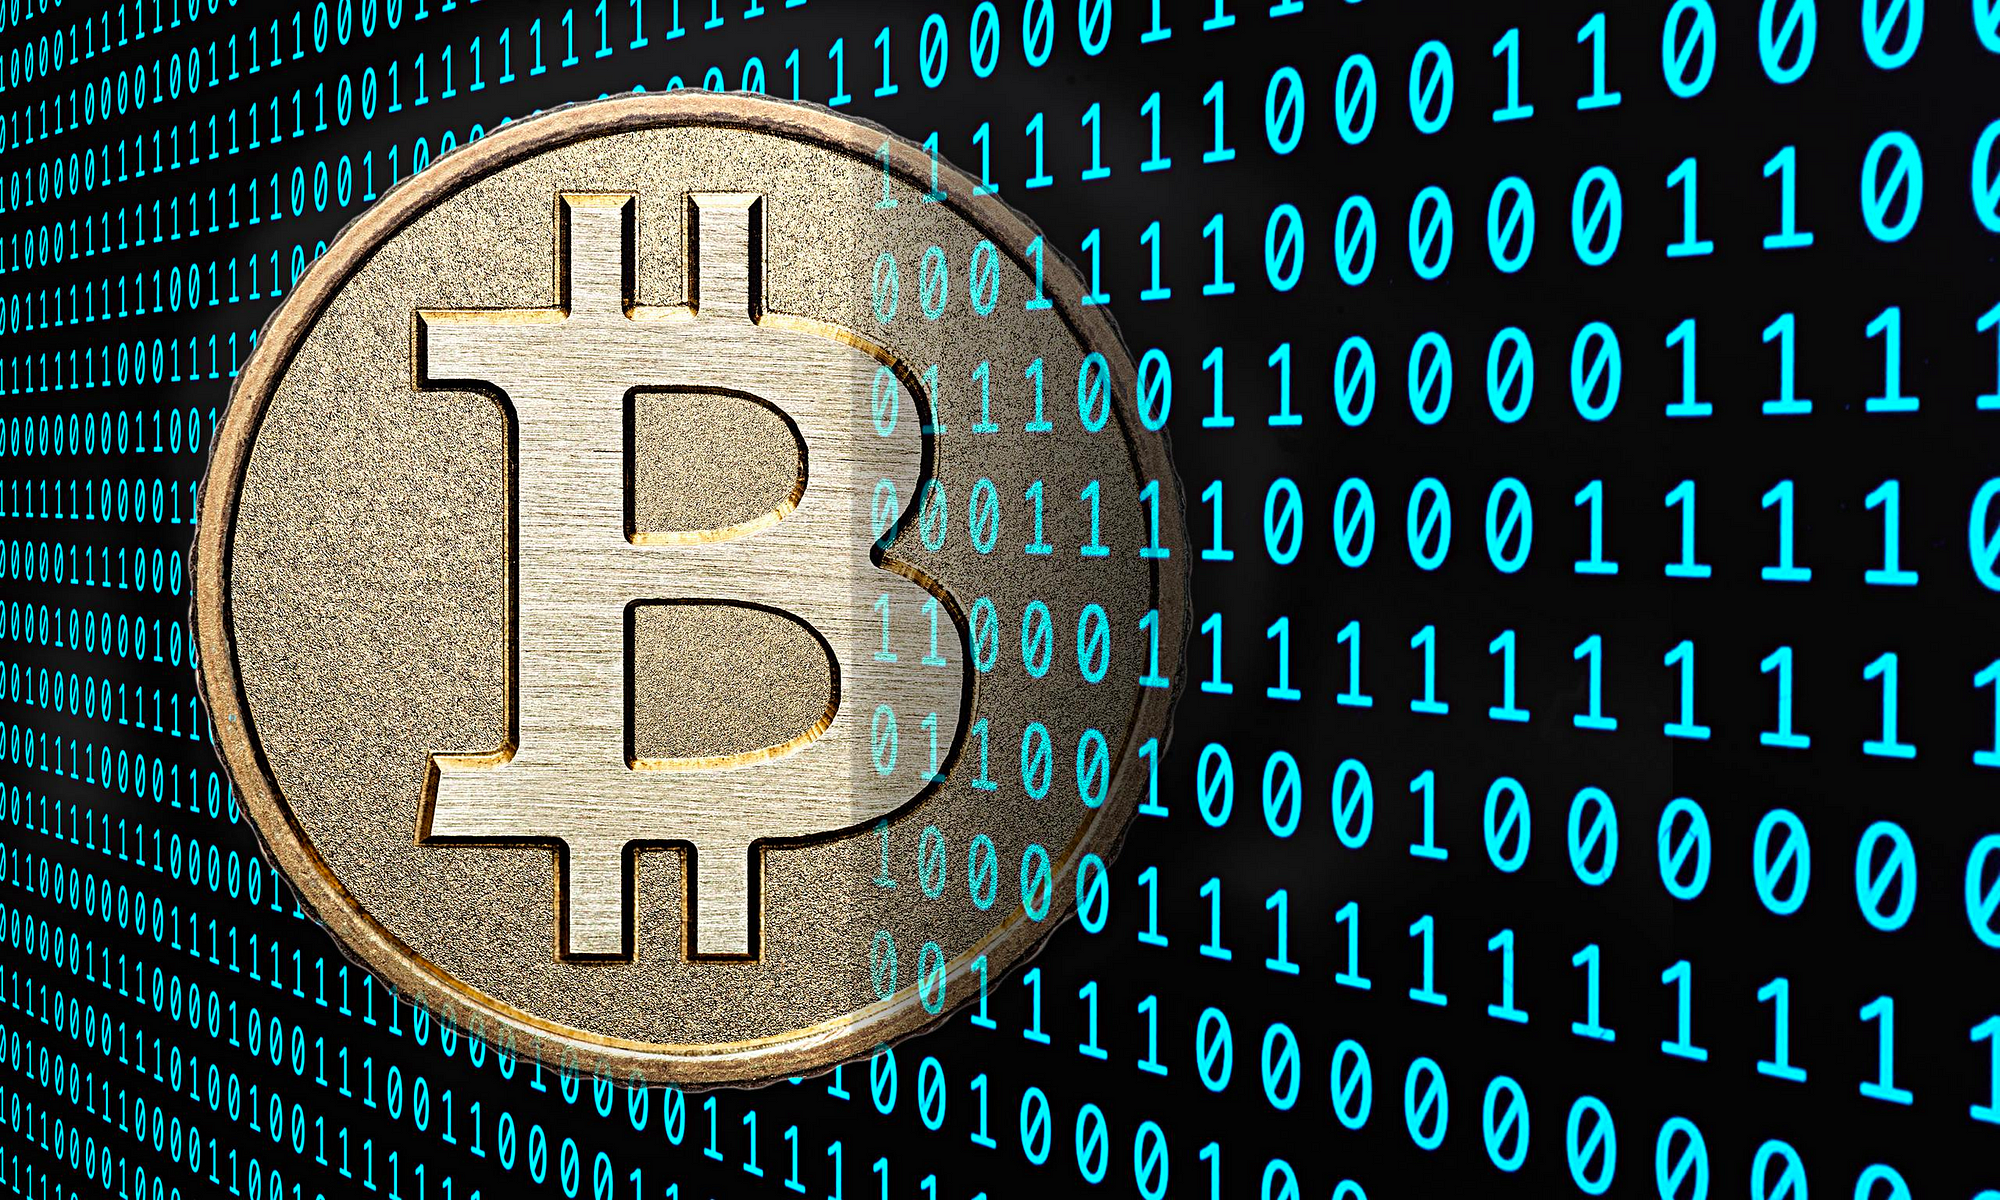 Bitcoins CryptoMoeda Infectando mais de Meio Milhão de PCs 